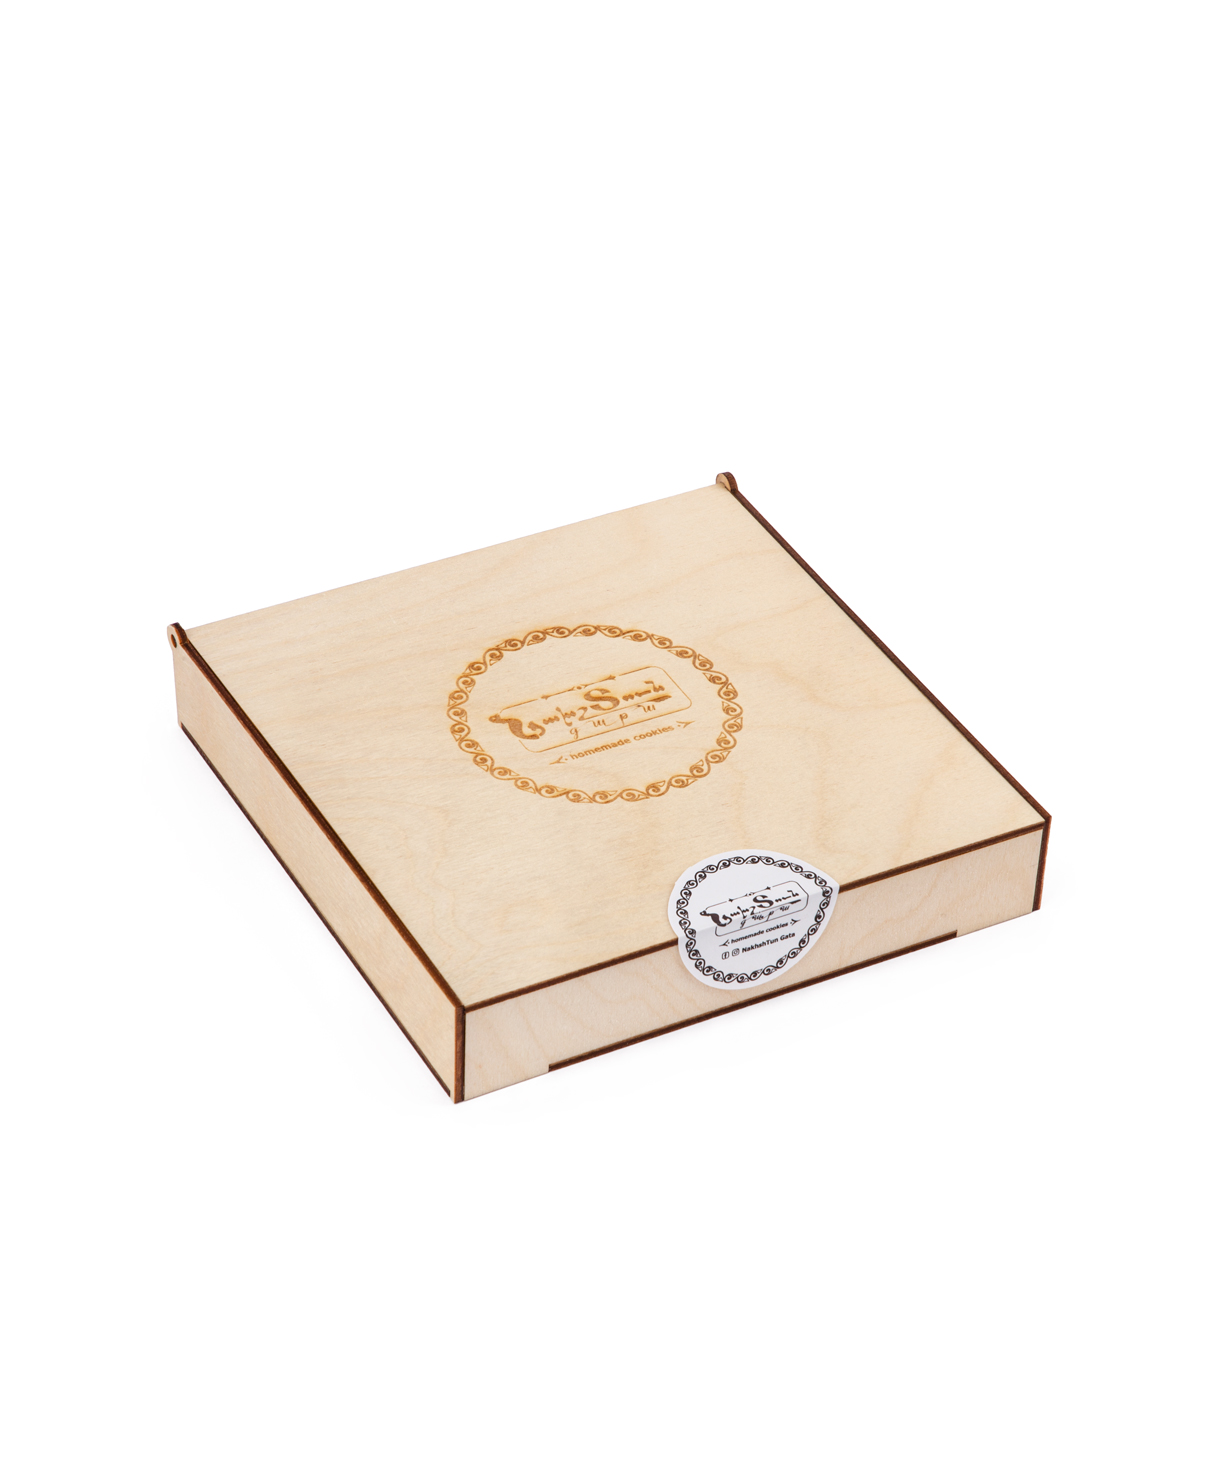 Gata `NakhshTun Gata` royal, in a wooden box, small